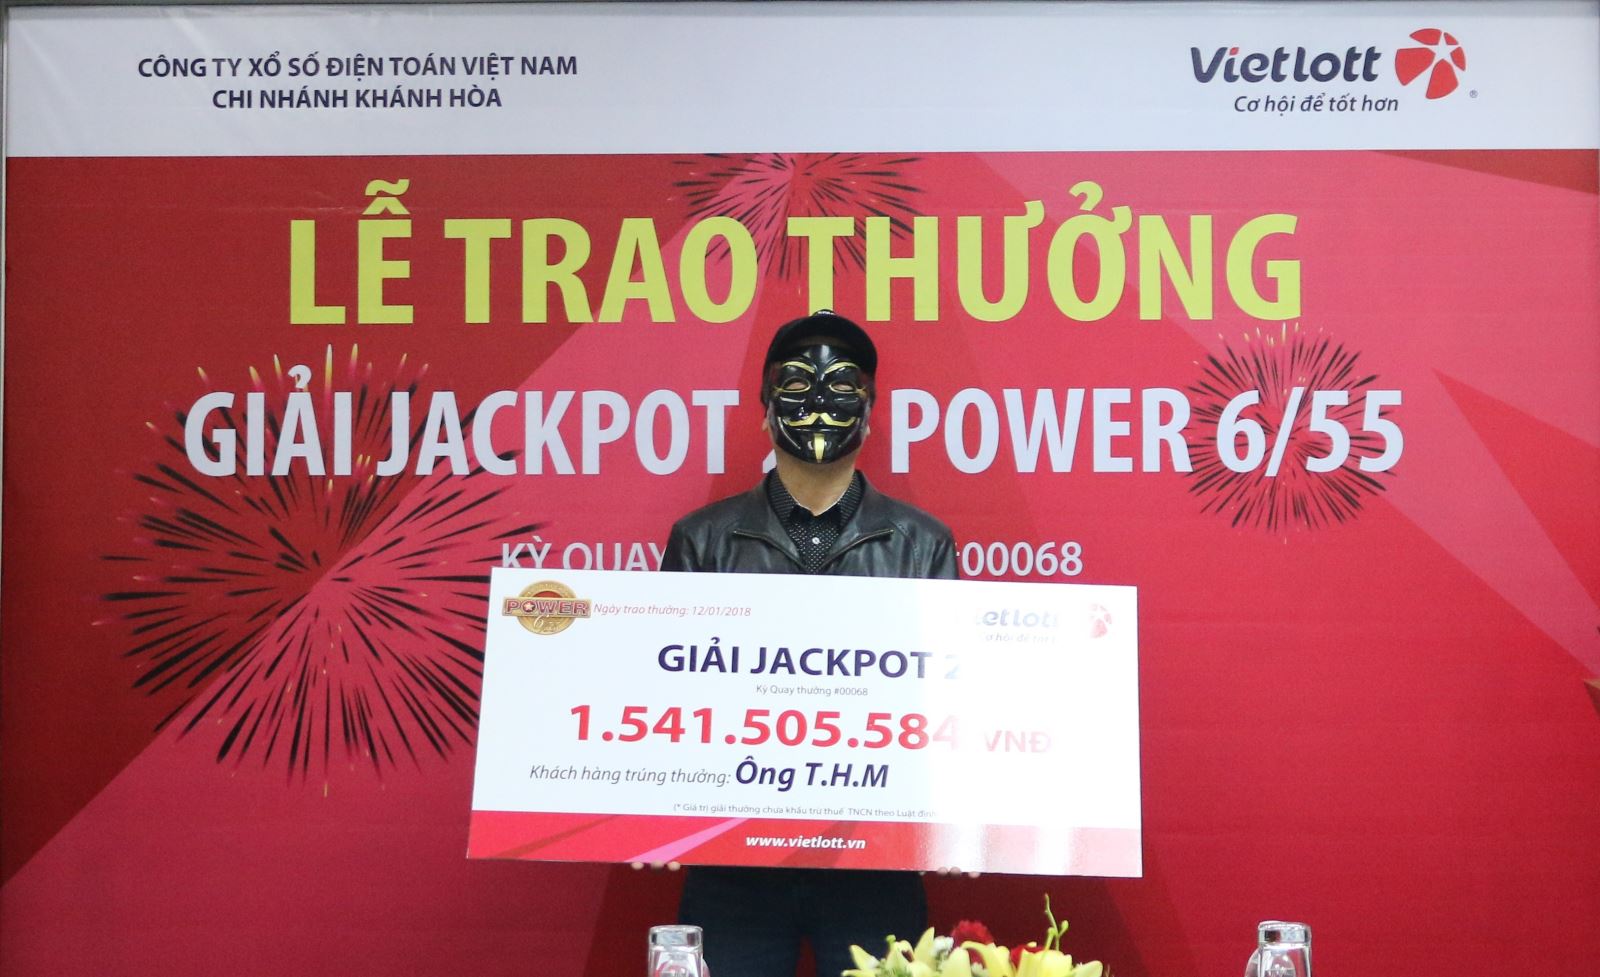 Xổ số Vietlott: Đi du lịch Bình Định một người đến từ Hà Nội bất ngờ trúng độc đắc 1,5 tỷ đồng